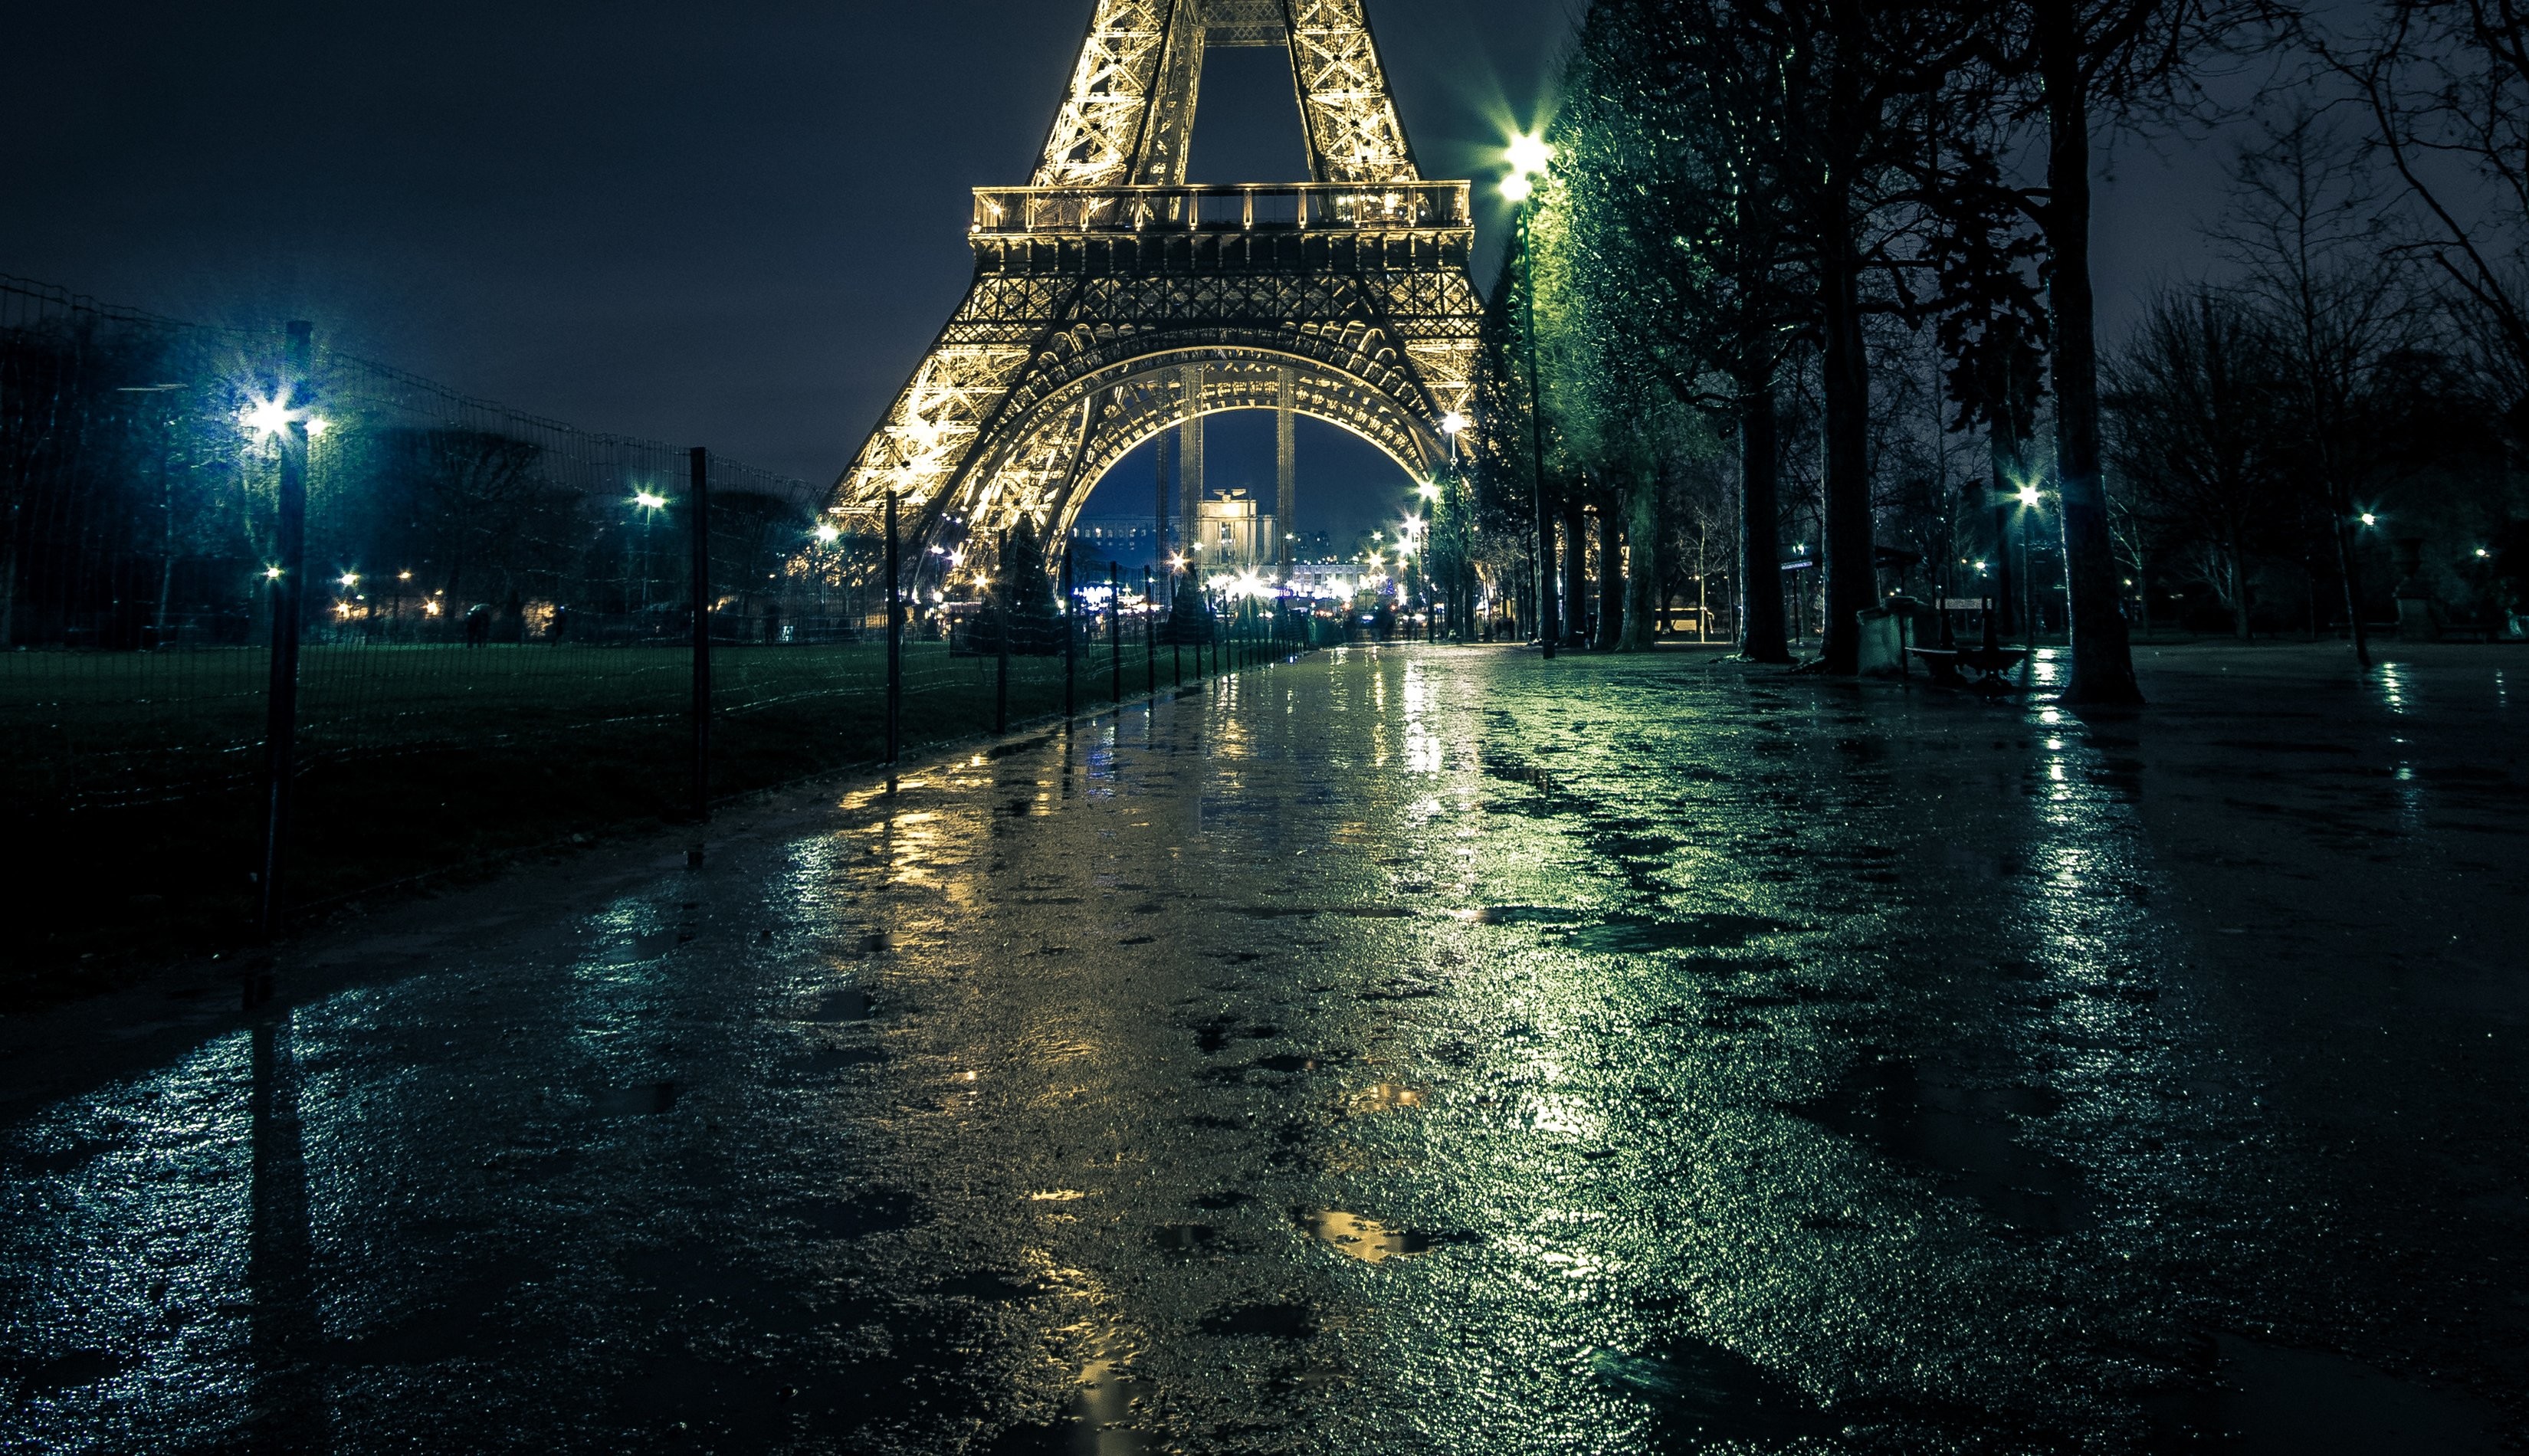 3300x1900 France Paris Street Eiffel Tower Night Street lights Trees Cities wallpaper  |  | 920387 | WallpaperUP